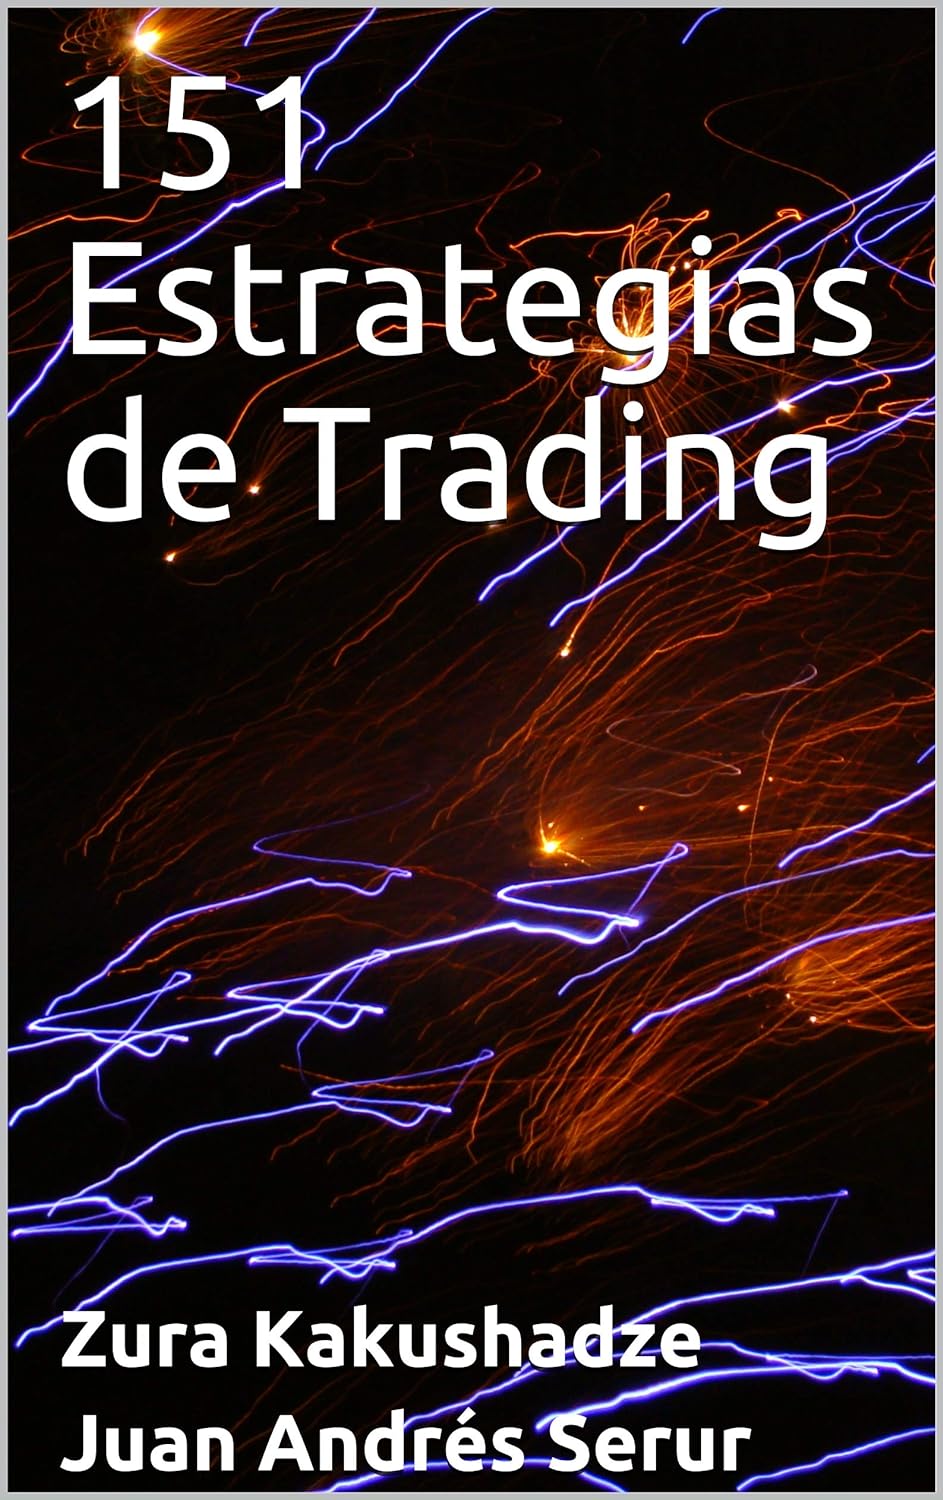 151 Trading Strategies by Zura kakushadze & Juan Serur